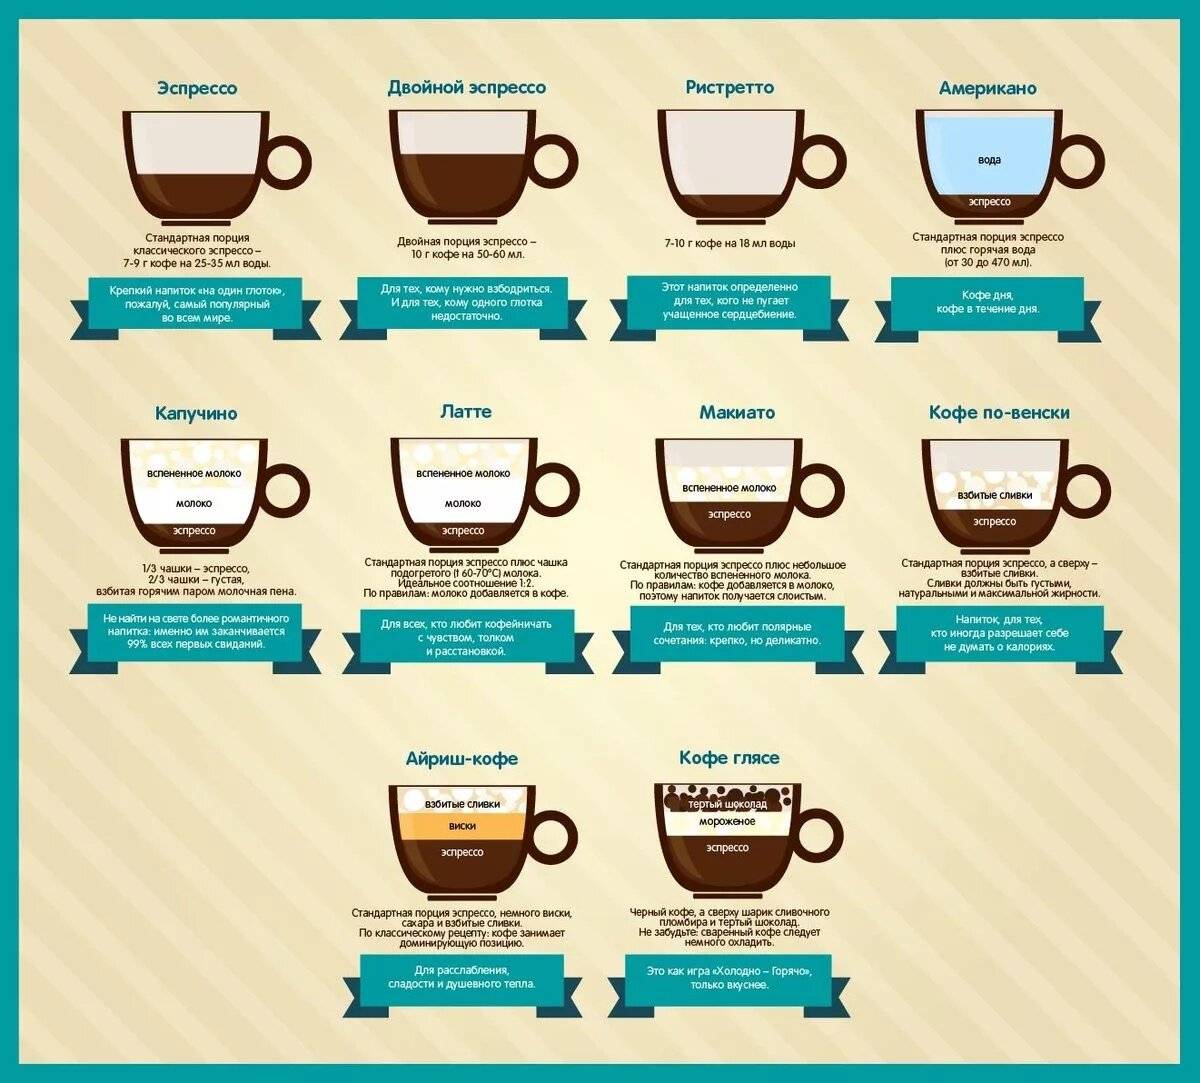 Какой помол кофе лучше и на что он влияет. как настроить помол